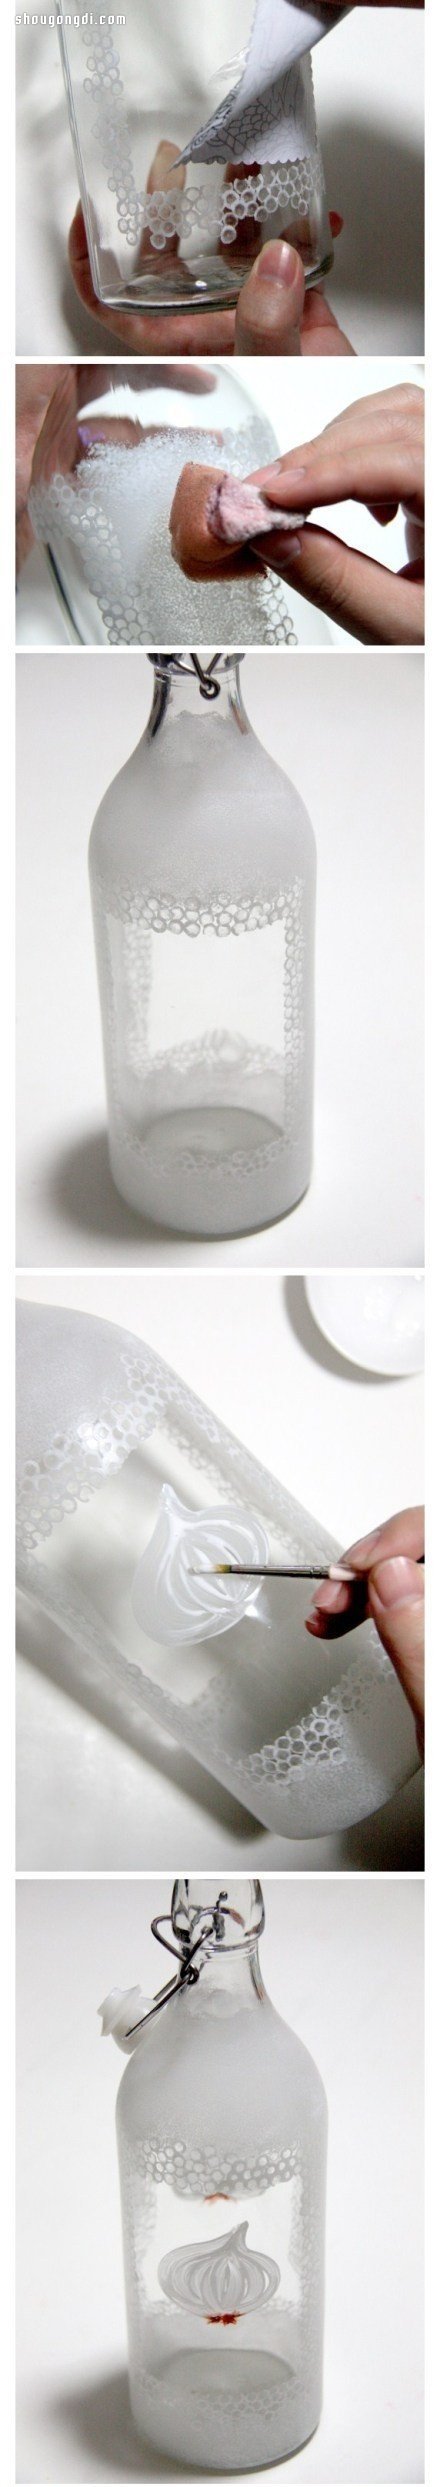 廢棄玻璃瓶手繪DIY民族風精美手工藝術品- www.shougongdi.com